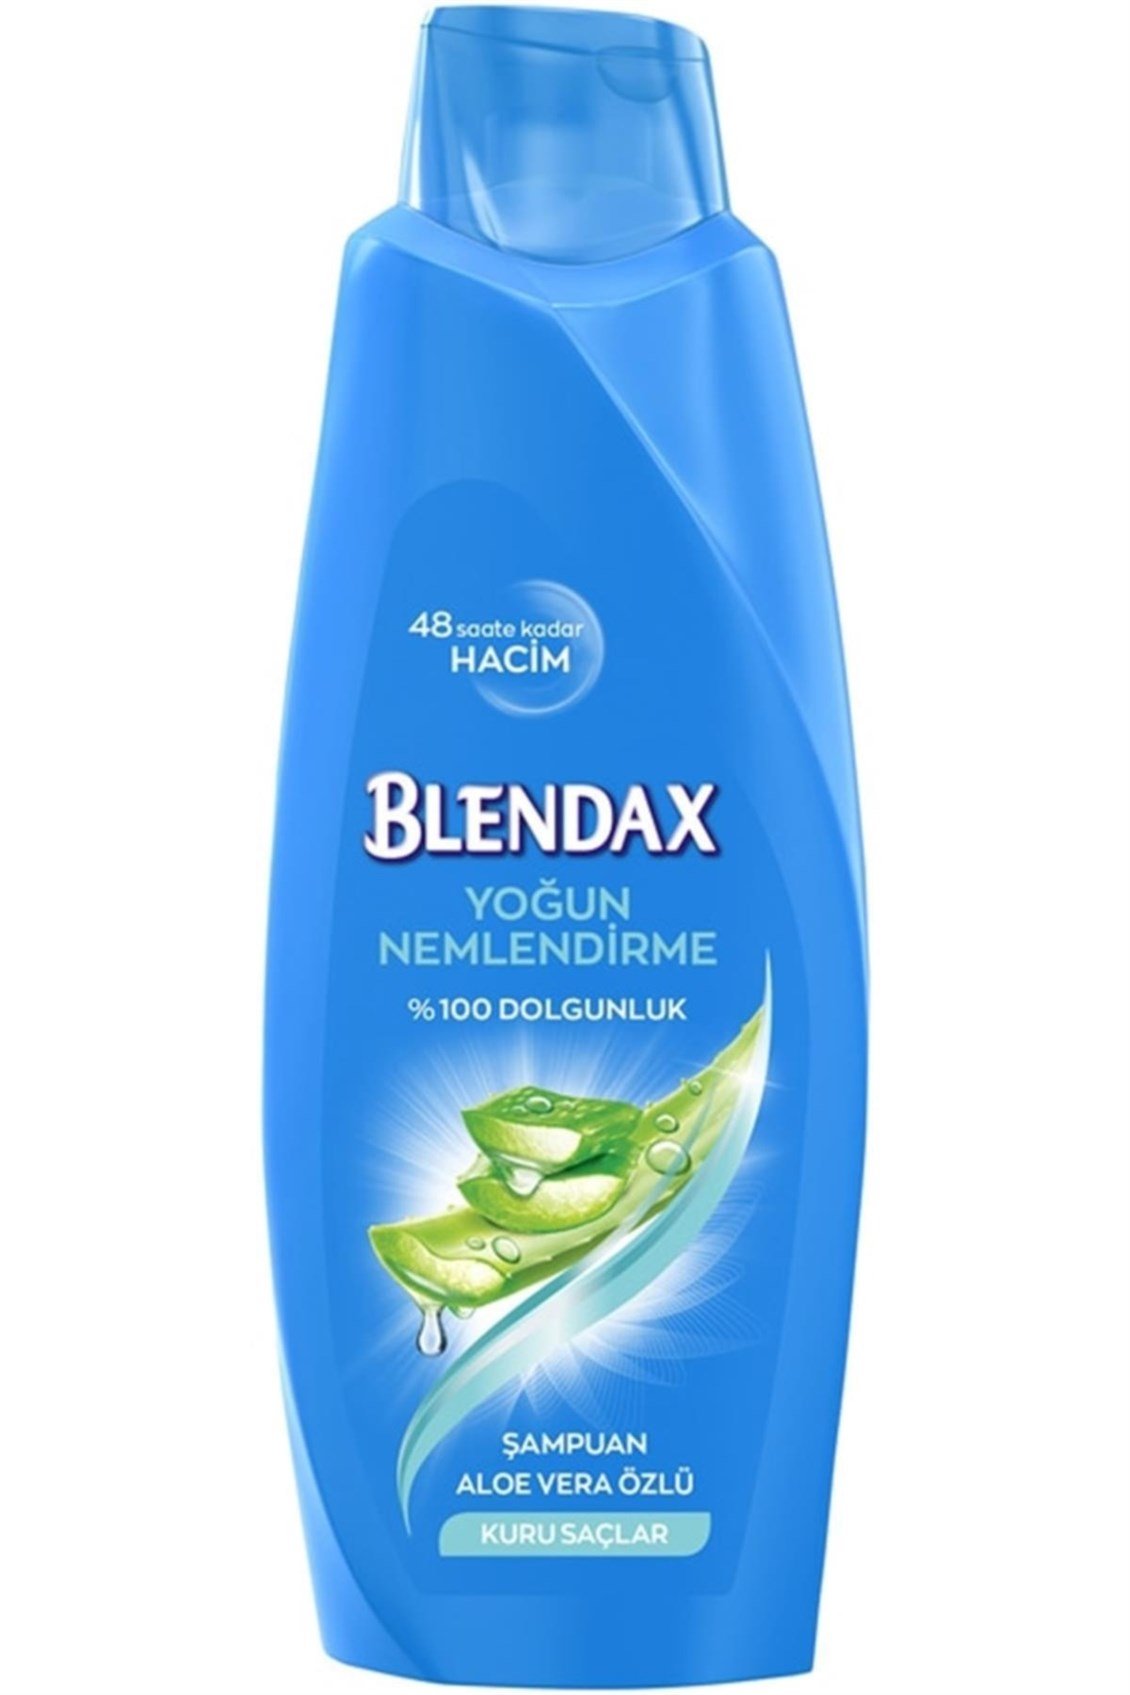 Blendax Aloe Vera Özlü Şampuan 500 ml - Onur Market